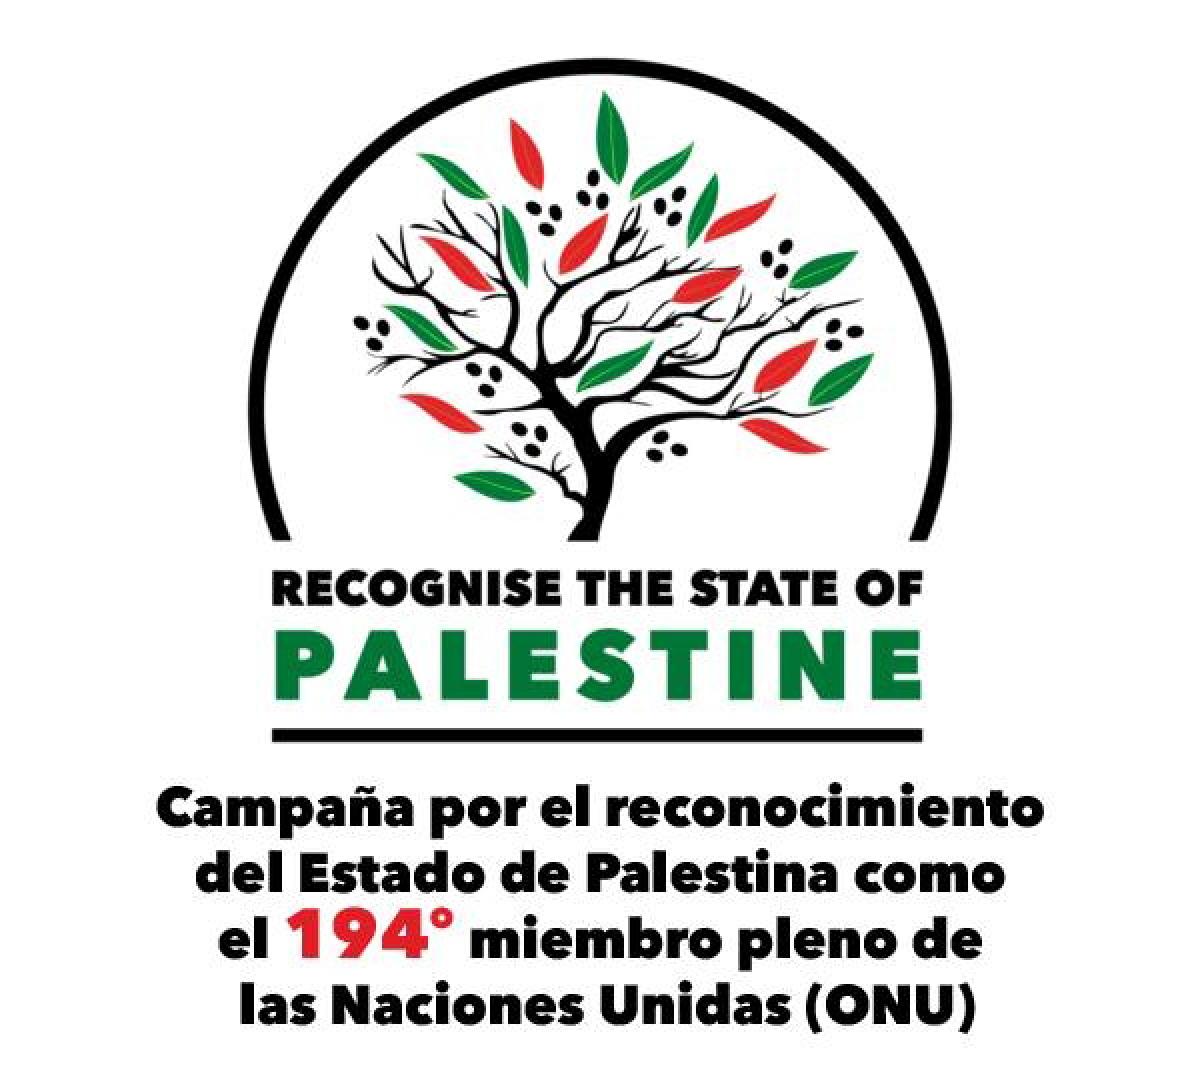 Campaña por el reconocimiento del Estado de Palestina